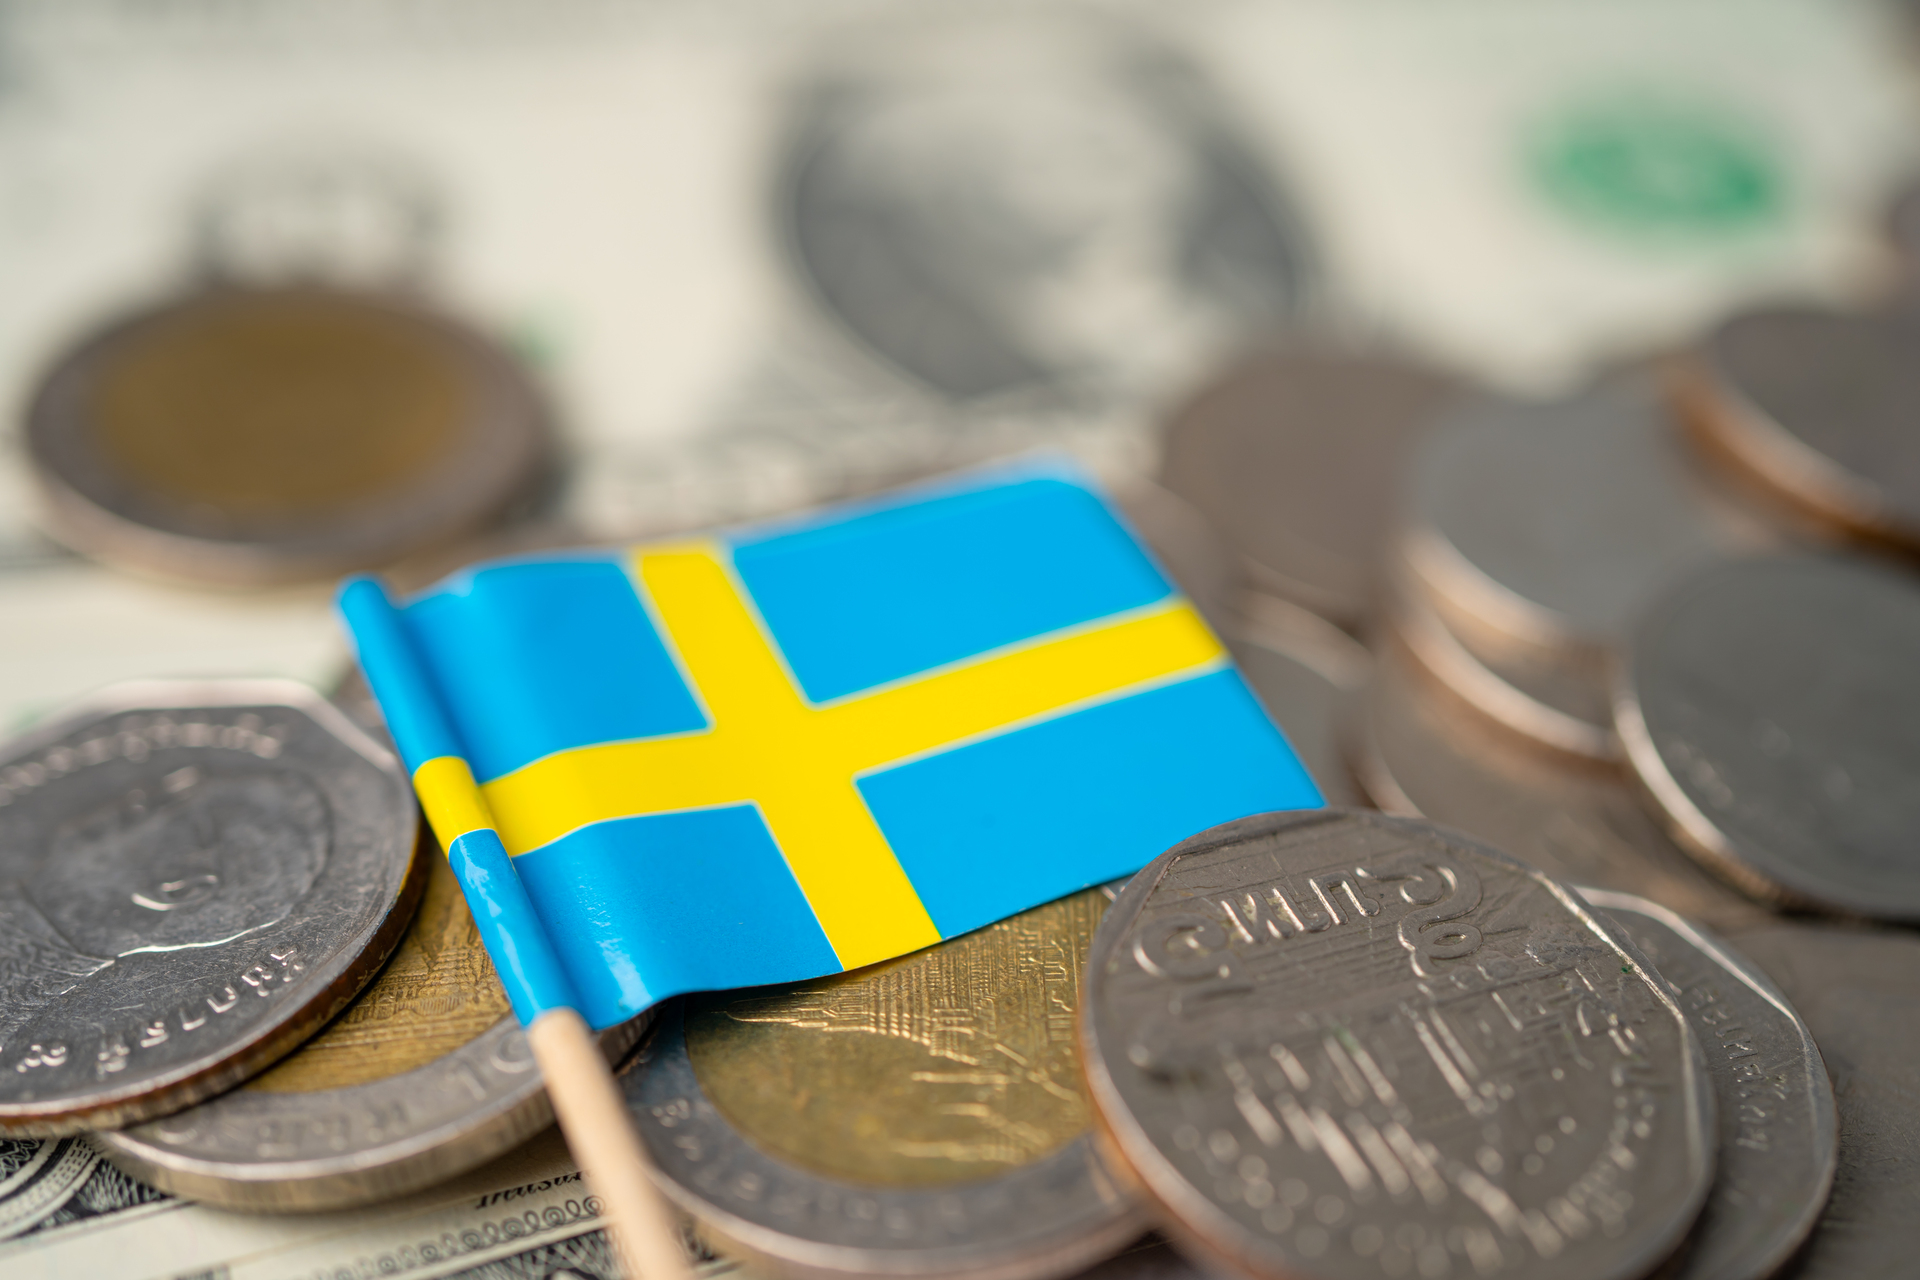 Szwedzka flaga w otoczeniu monet, które symbolizują gospodarczą siłę i stabilność Szwecji